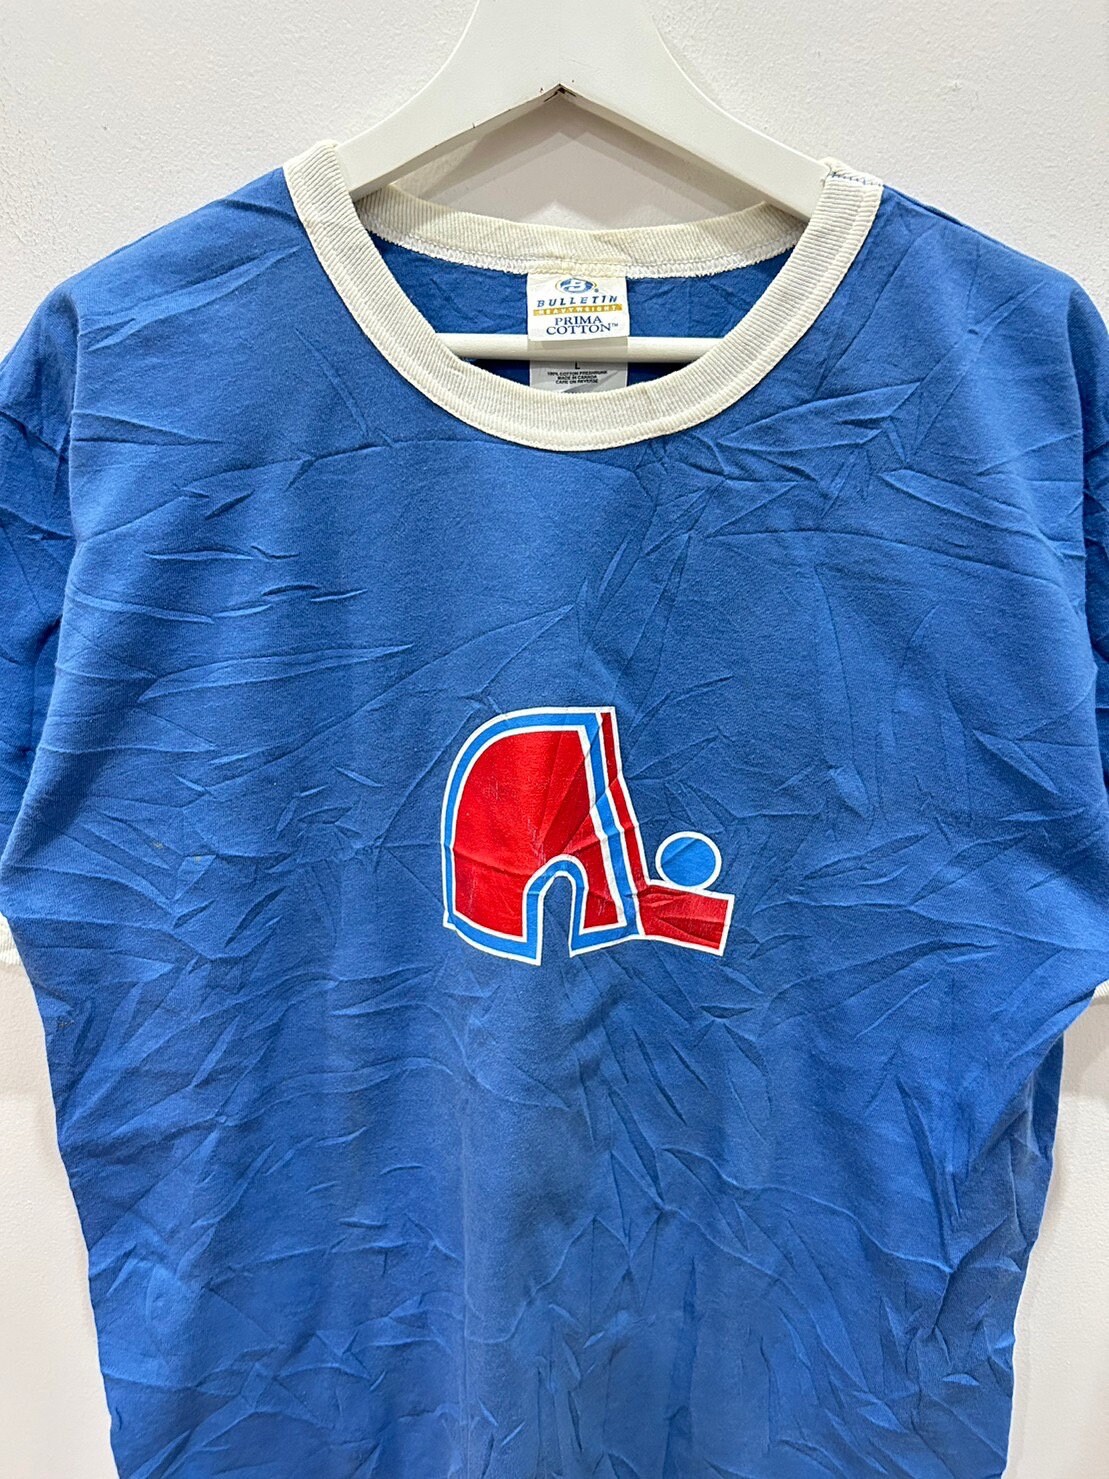 90s Quebec Nordiques Division Nord Est NHL T-shirt. Vintage 